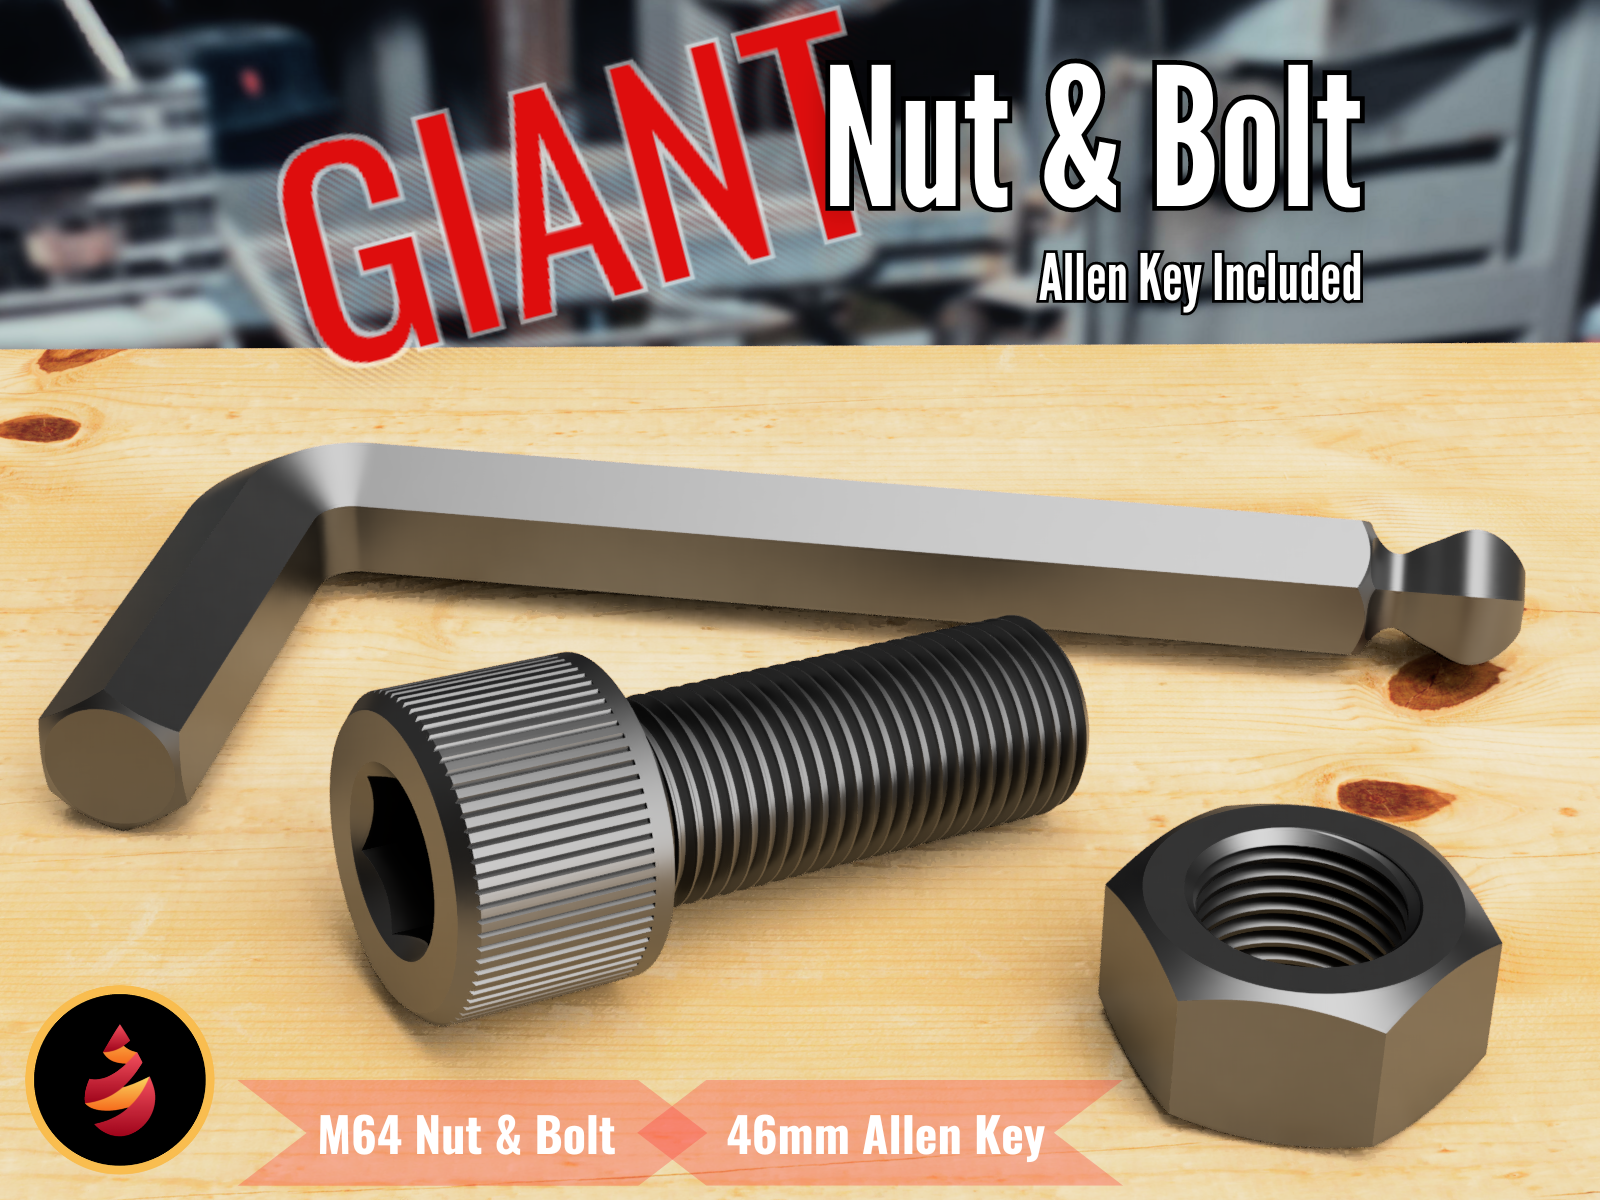 GIANT Nut & Bolt by JamesThePrinter